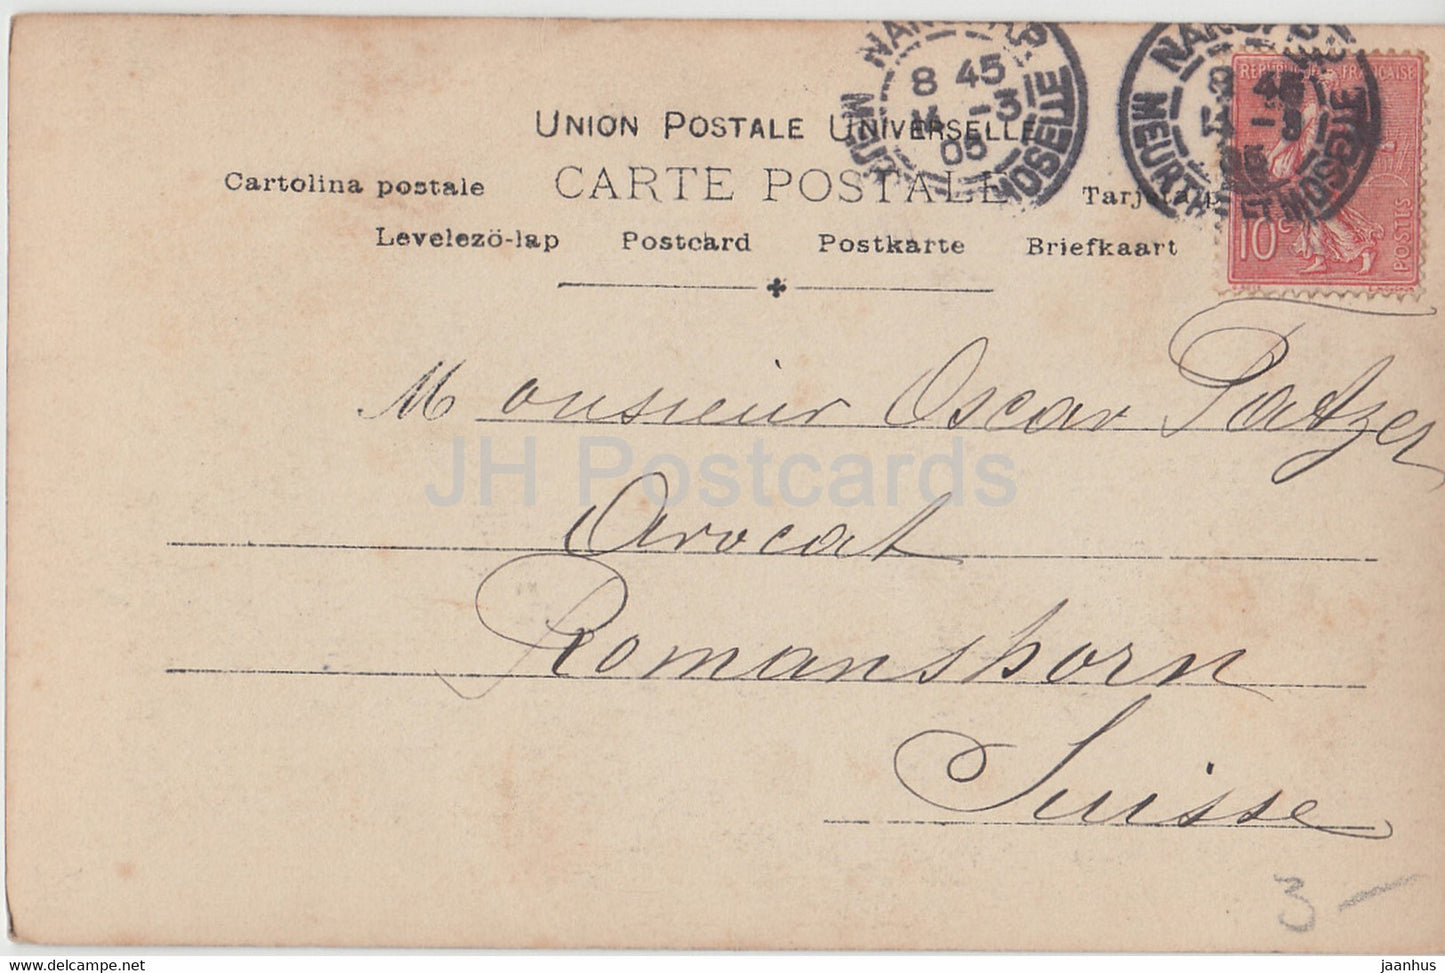 Französische Tänzerin und Vedette Liane de Pougy - Frau - ETE - Reutlinger Paris - alte Postkarte - 1905 - Frankreich - gebraucht